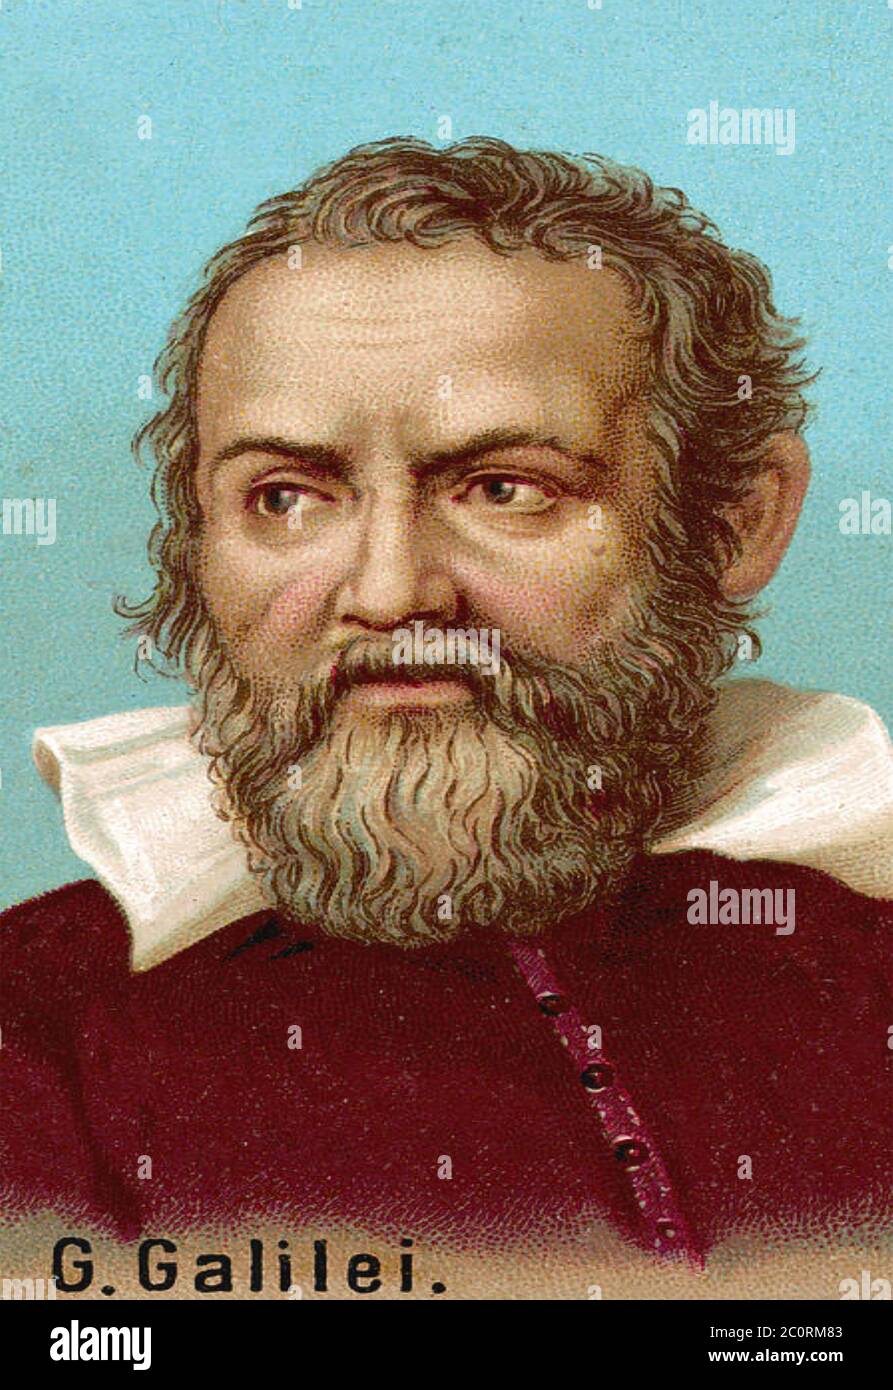 GALILEO GALILEI (1564-1642) fisico, astronomo e ingegnere italiano in un'illustrazione del XIX secolo. Foto Stock